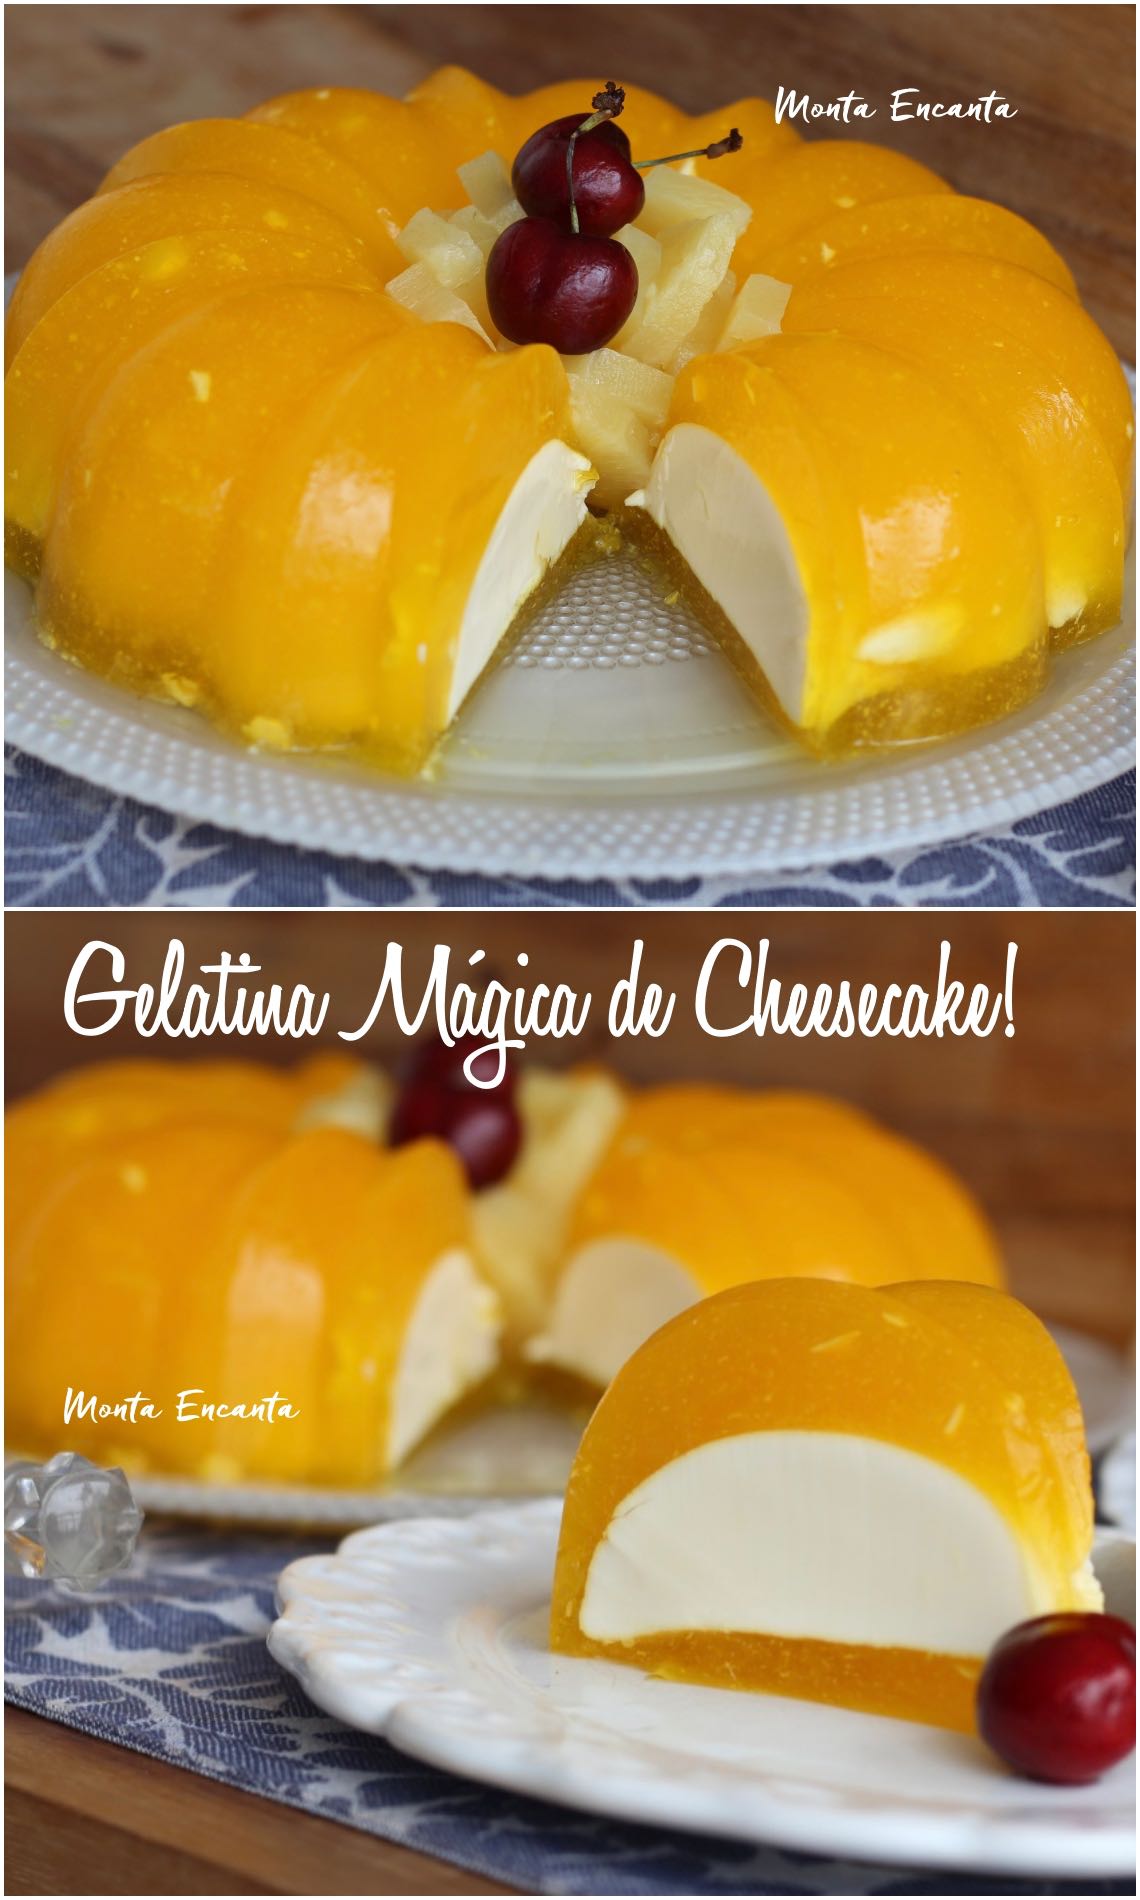 gelatina mágica de cheesecake sabor abacaxi